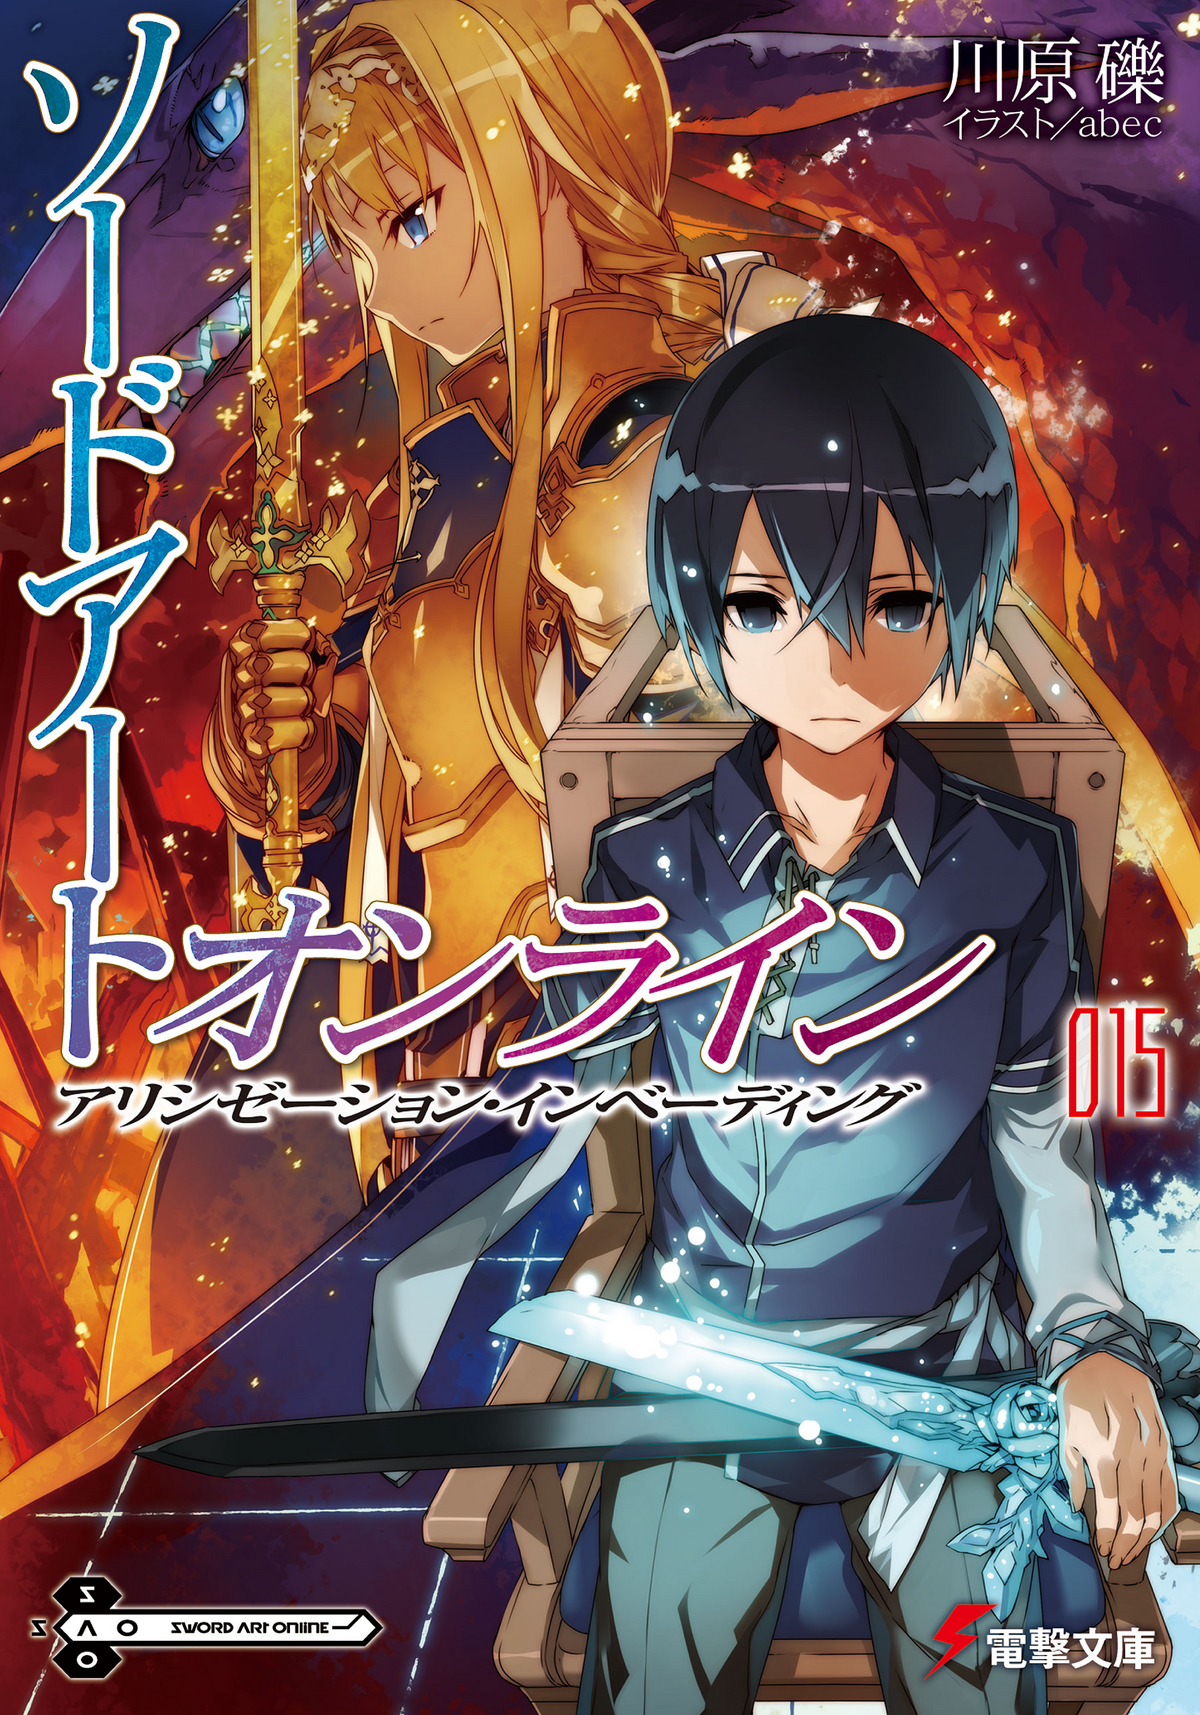 Sword Art Online Light Novel Volume 20, Sword Art Online Wiki